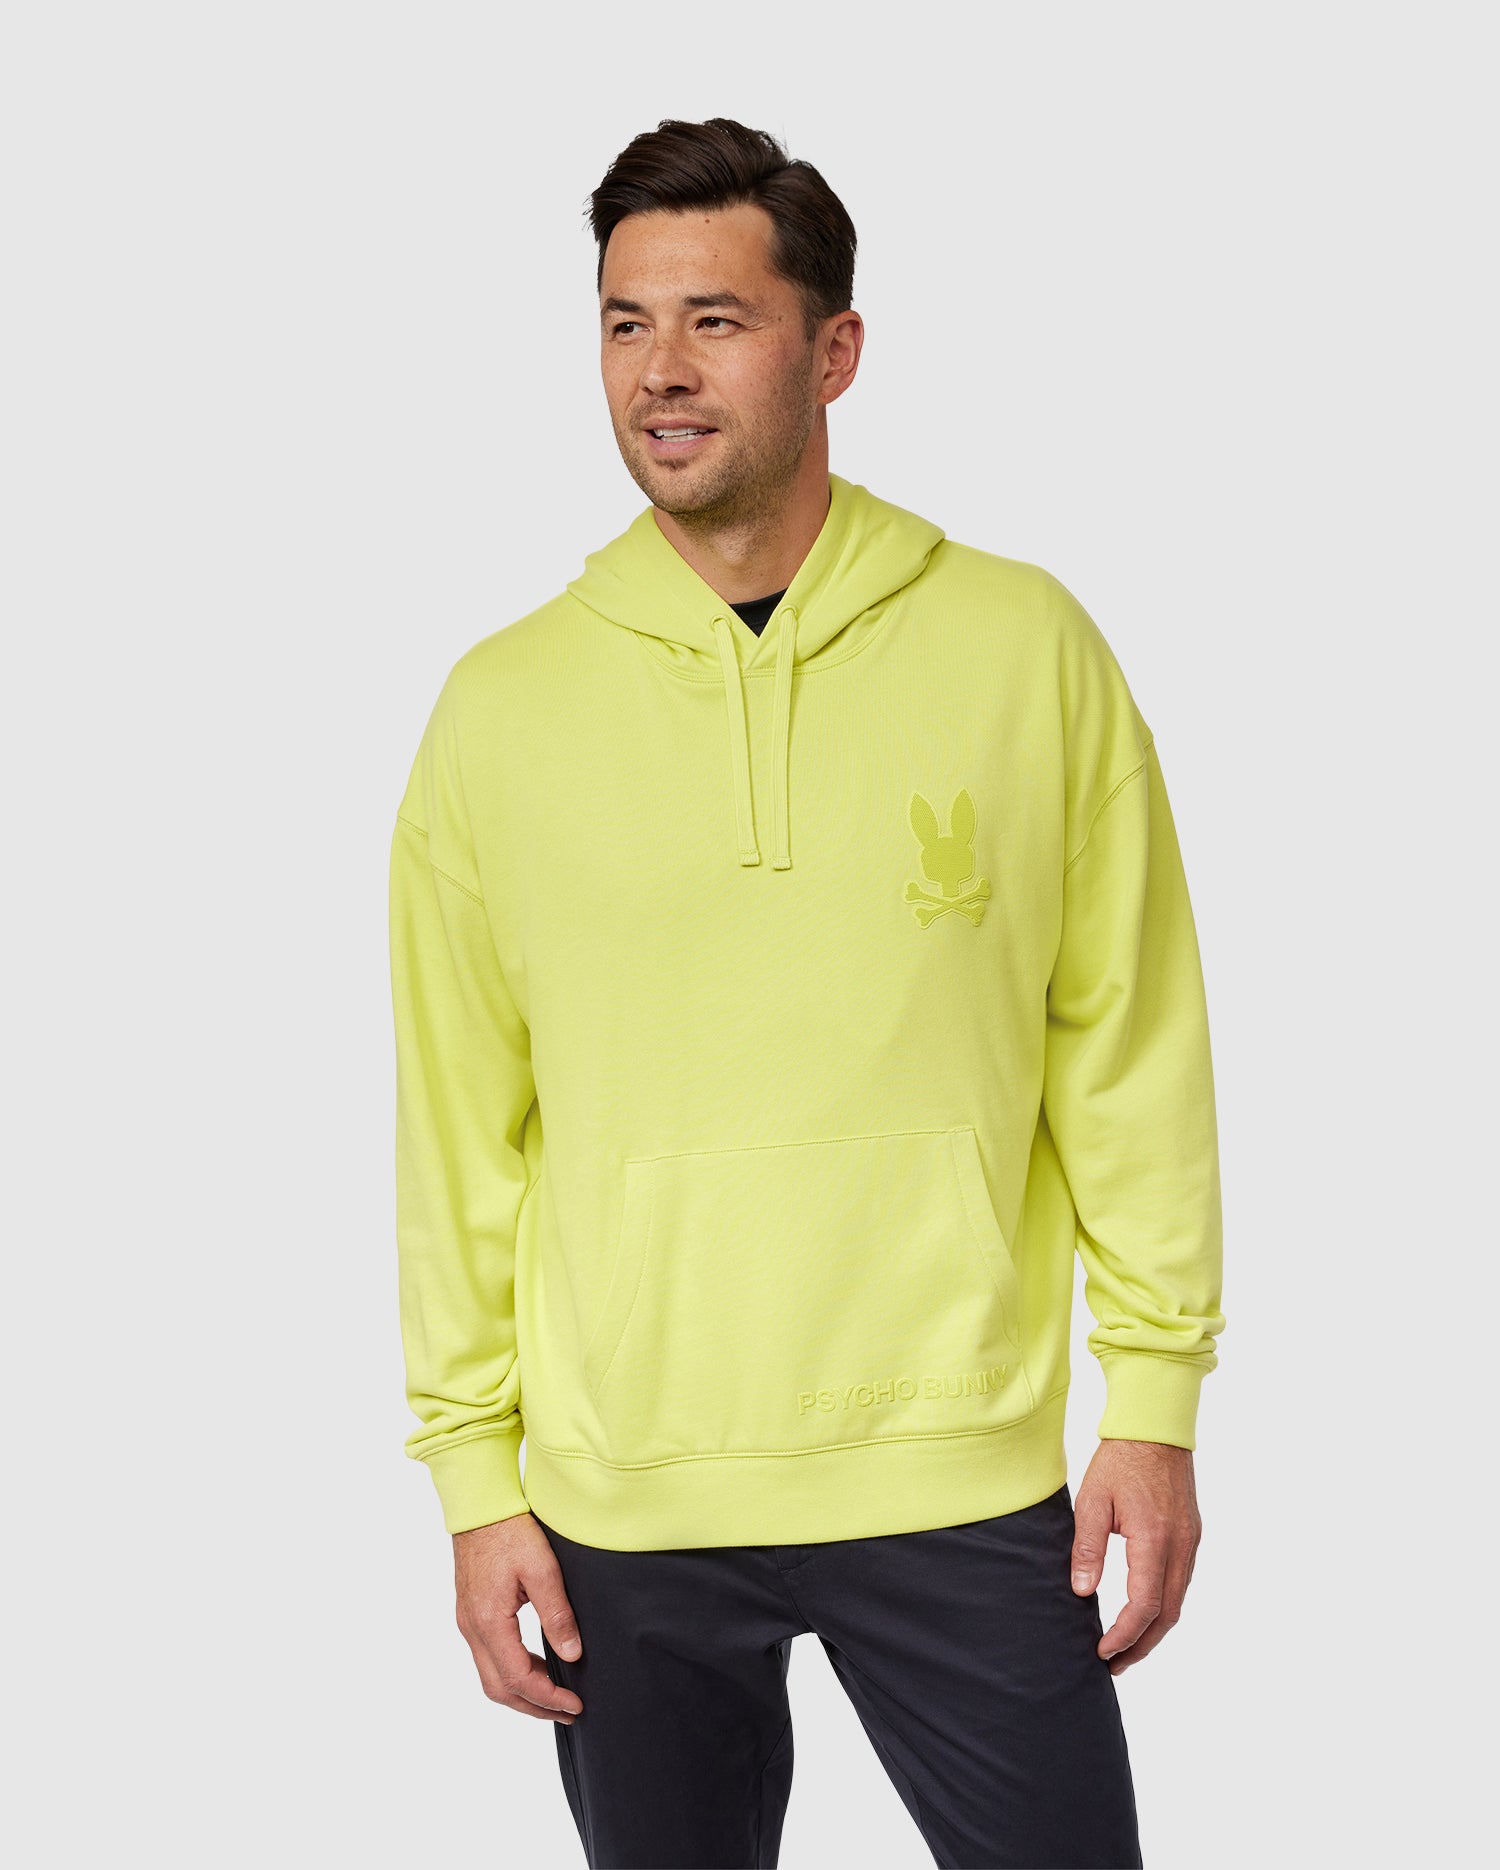 Men's Sweatshirts & Hoodies, Zip Ups & Pullovers